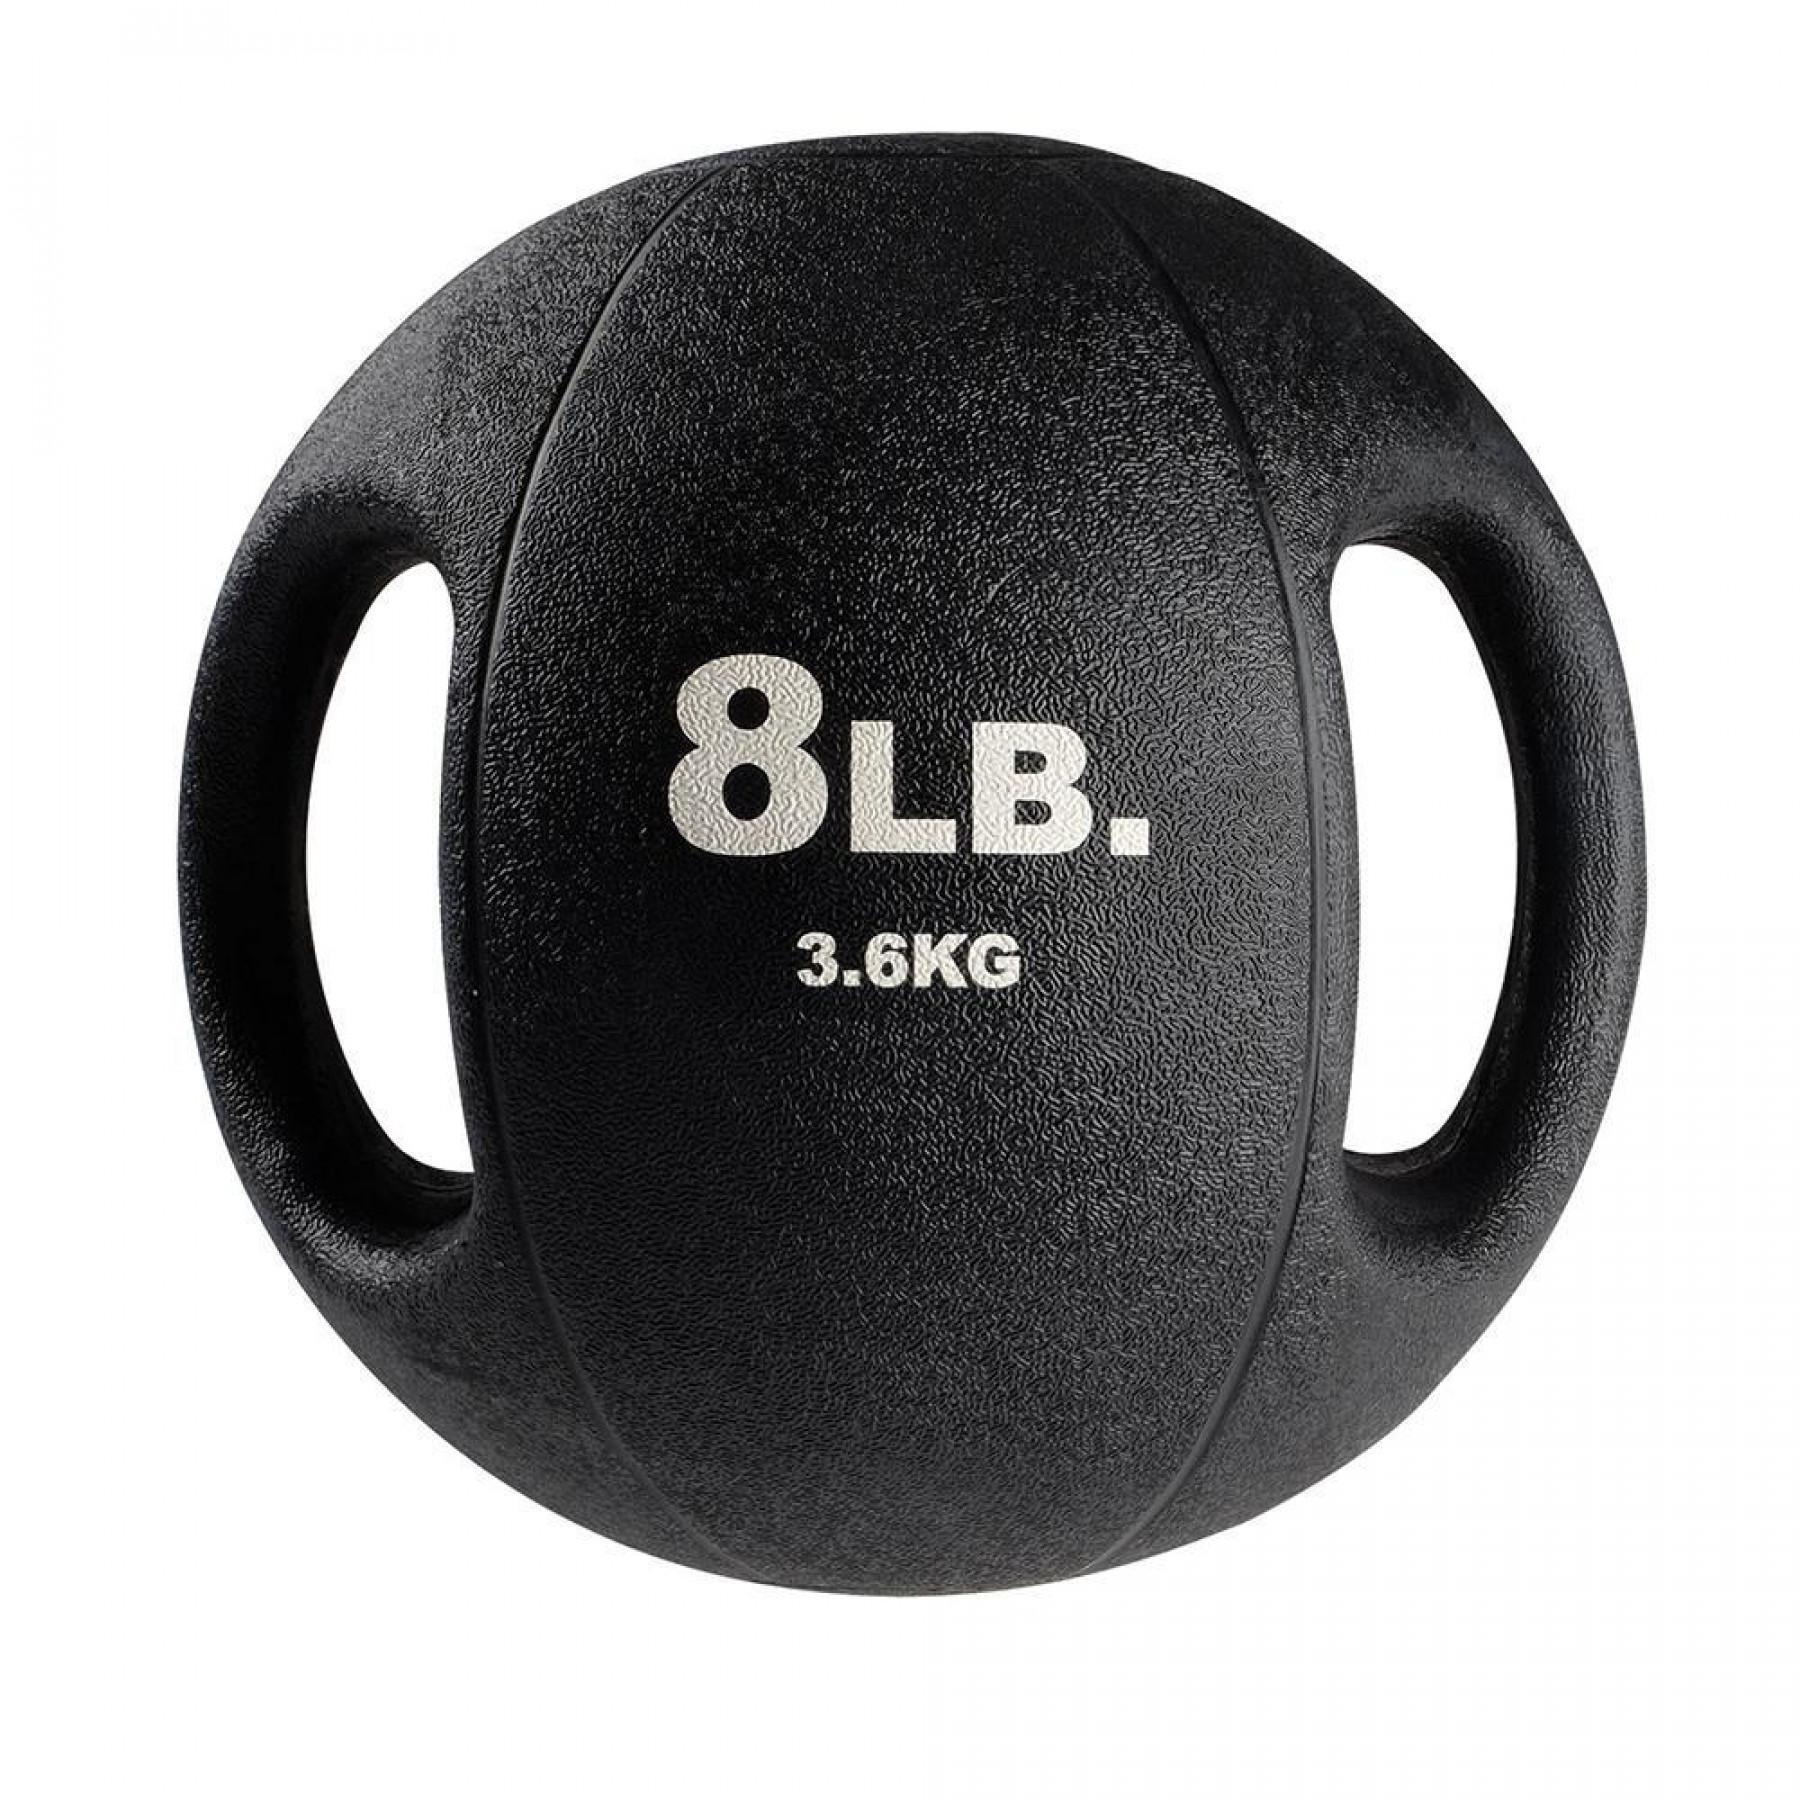 Medizinball 2 Griffe 6,3 kg Body Solid